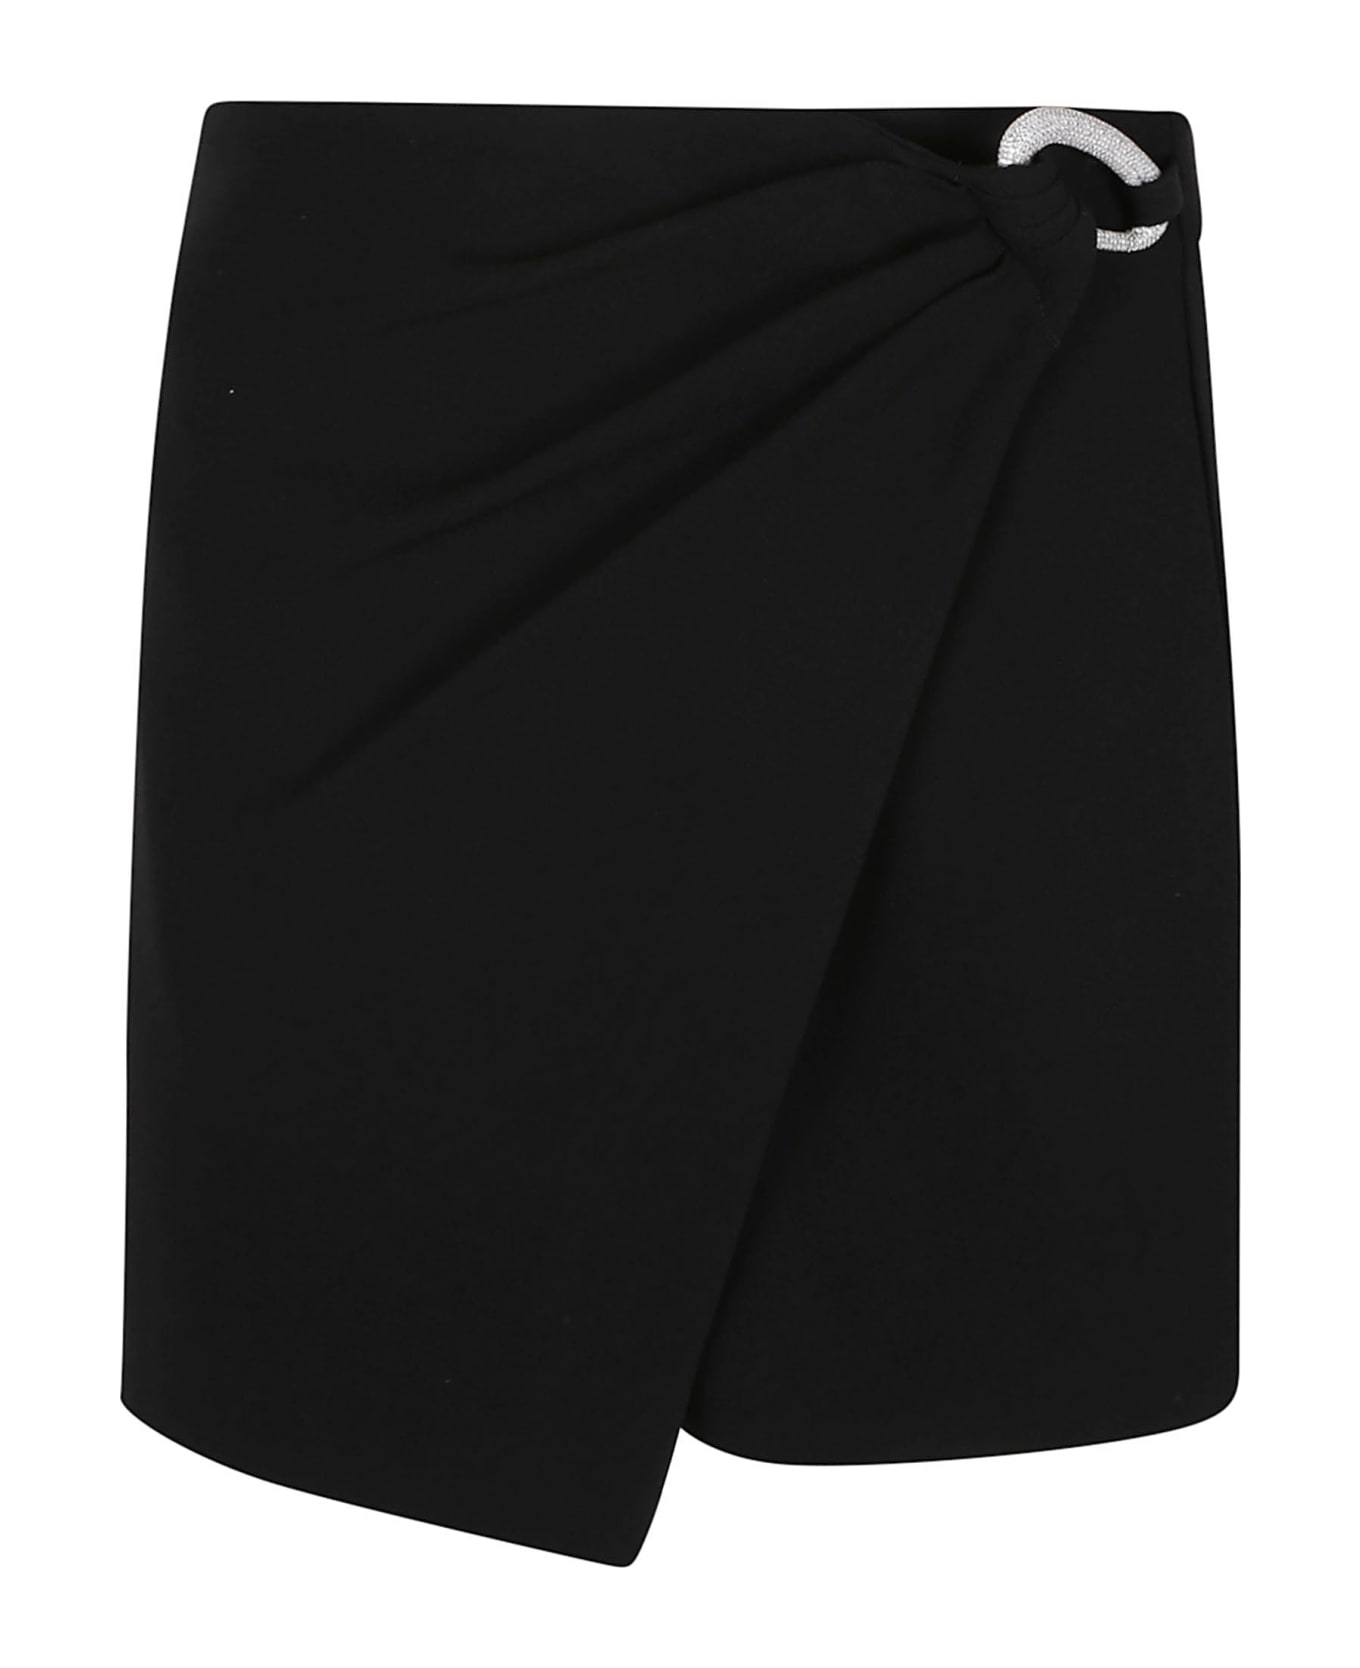 Jonathan Simkhai Ebony Wrap Mini Skirt - Black